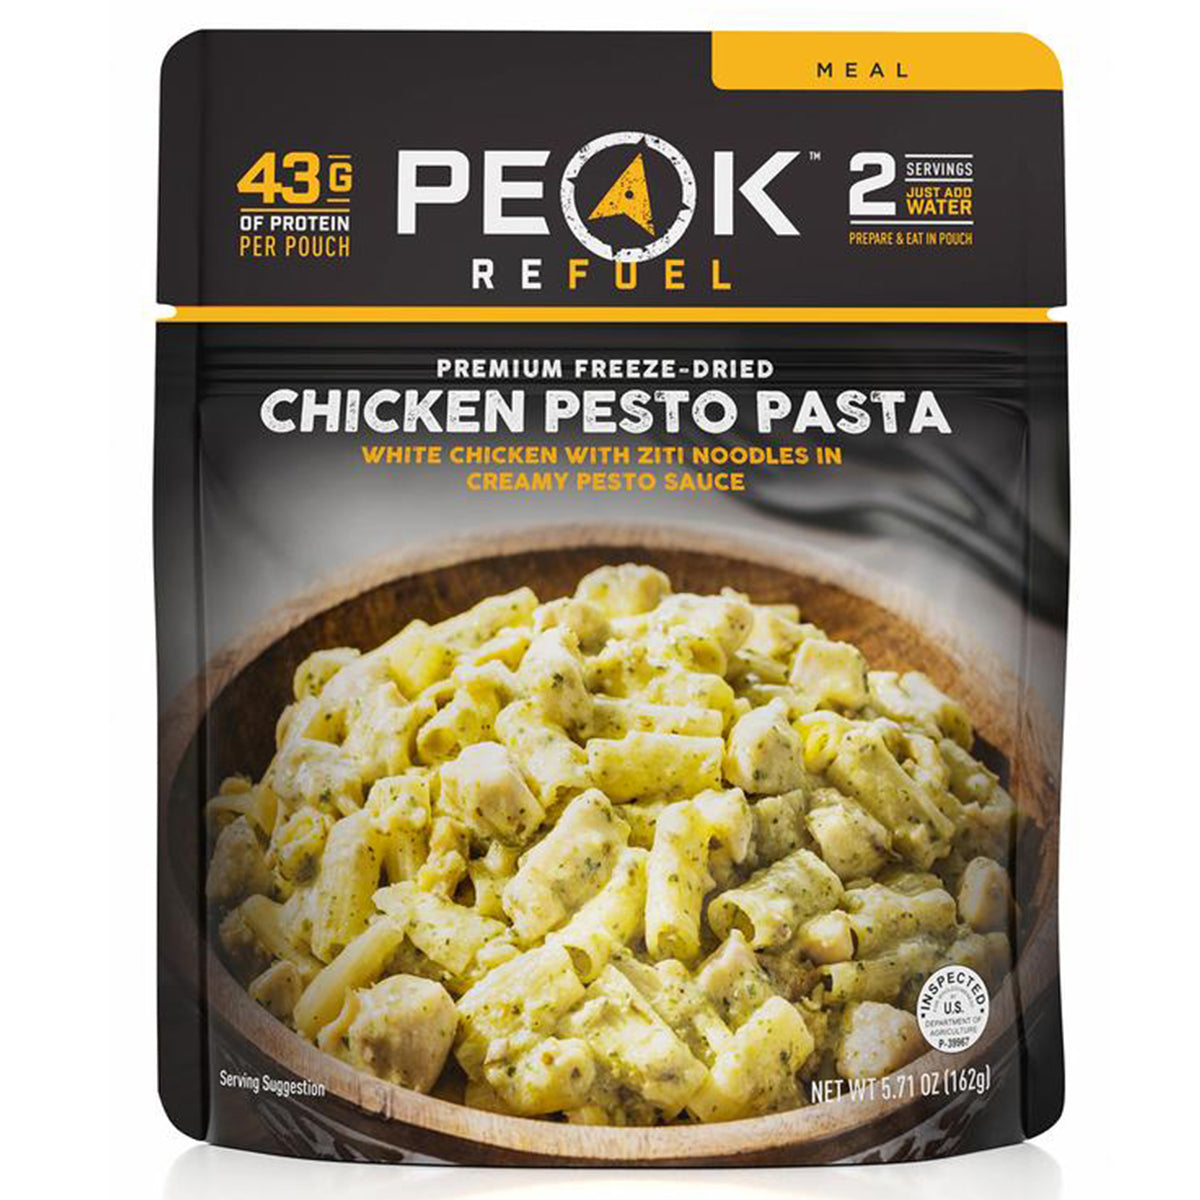 Peak Refuel Chicken Pesto Pasta in Peak Refuel Chicken Pesto Pasta by Peak Refuel | Camping - goHUNT Shop by GOHUNT | Peak Refuel - GOHUNT Shop